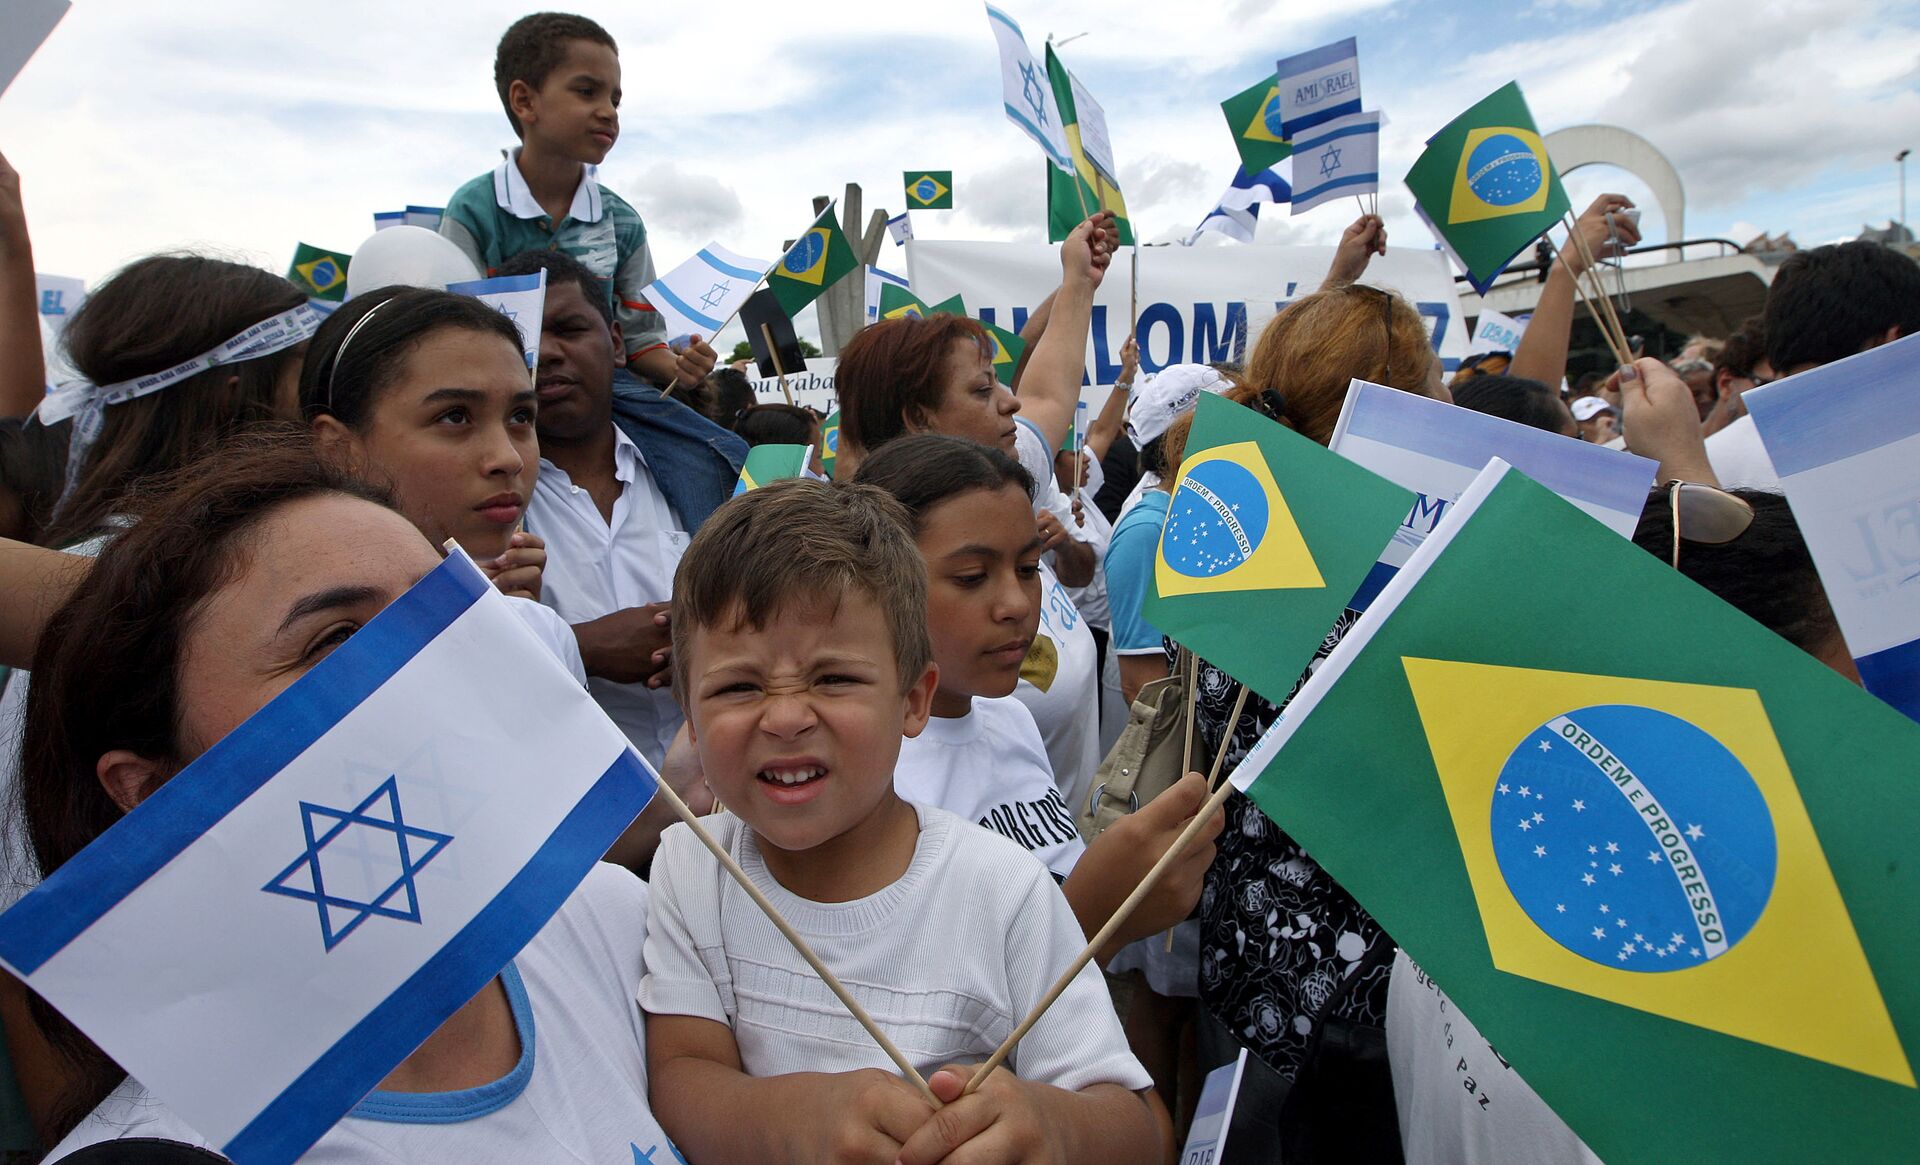 Judeus estão plenamente integrados no Brasil, diz analista após estudo sugerir migração para Israel - Sputnik Brasil, 1920, 24.06.2021